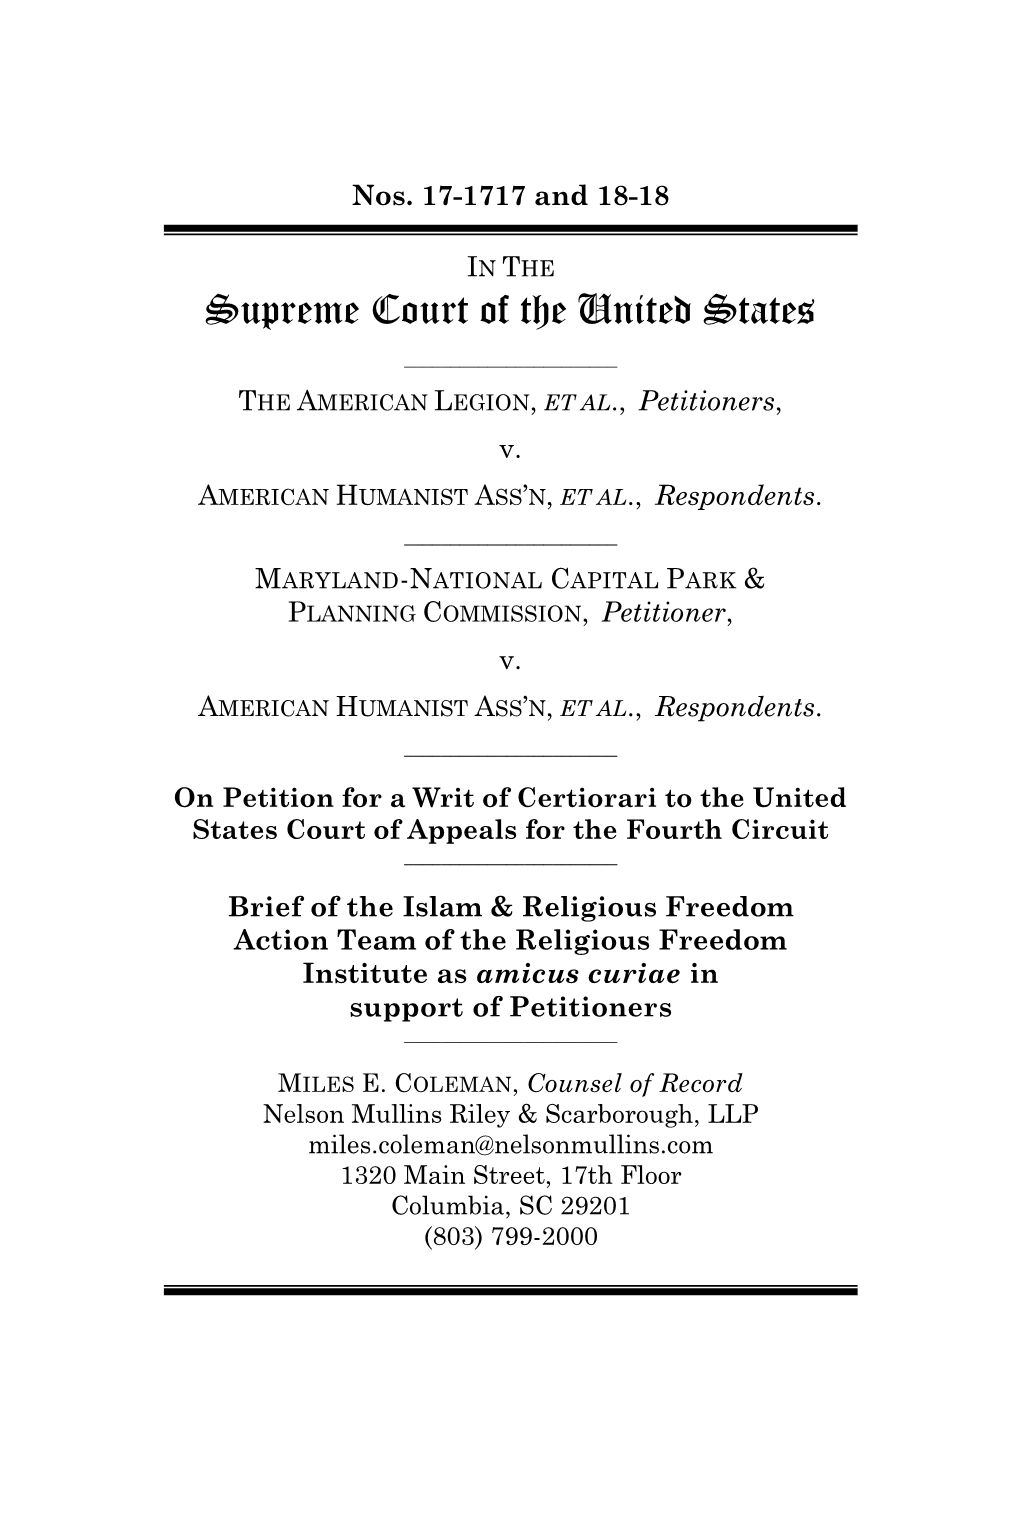 Brief in the Supreme Court